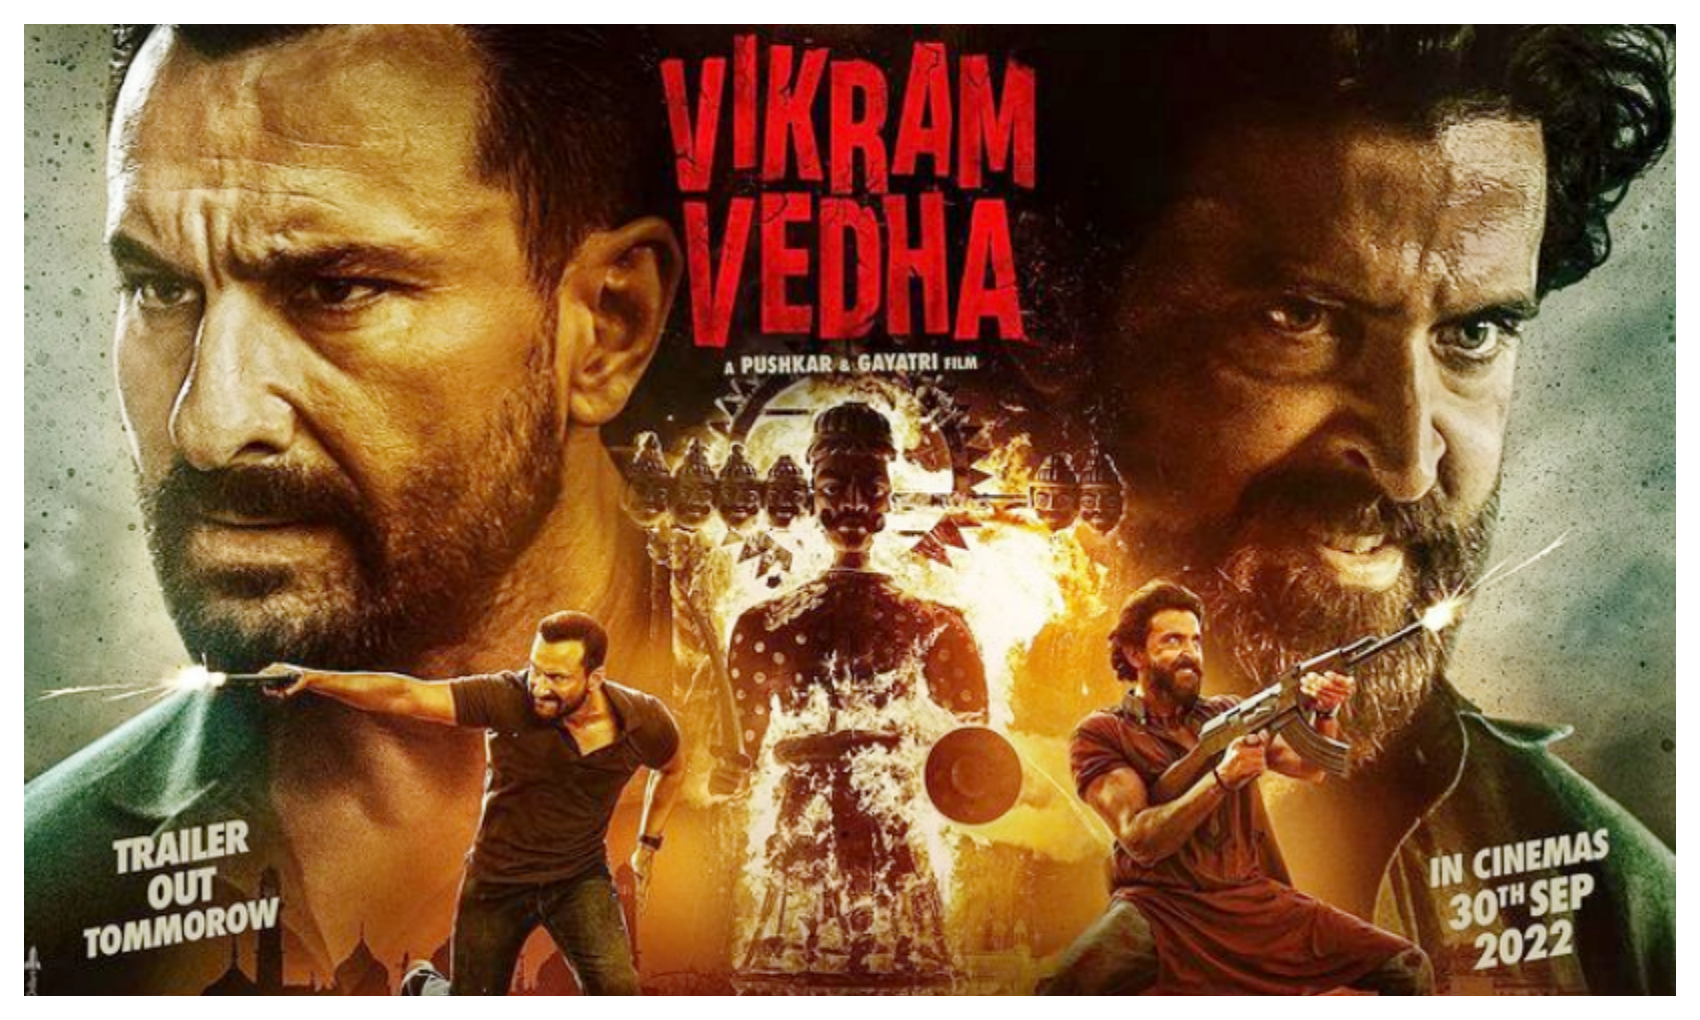 Vikram Vedha Trailer: ऋतिक रोशन और सैफ अली खान की फिल्म विक्रम वेधा का ट्रेलर हुआ रिलीज़, पक्की ब्लॉकबस्टर होगी